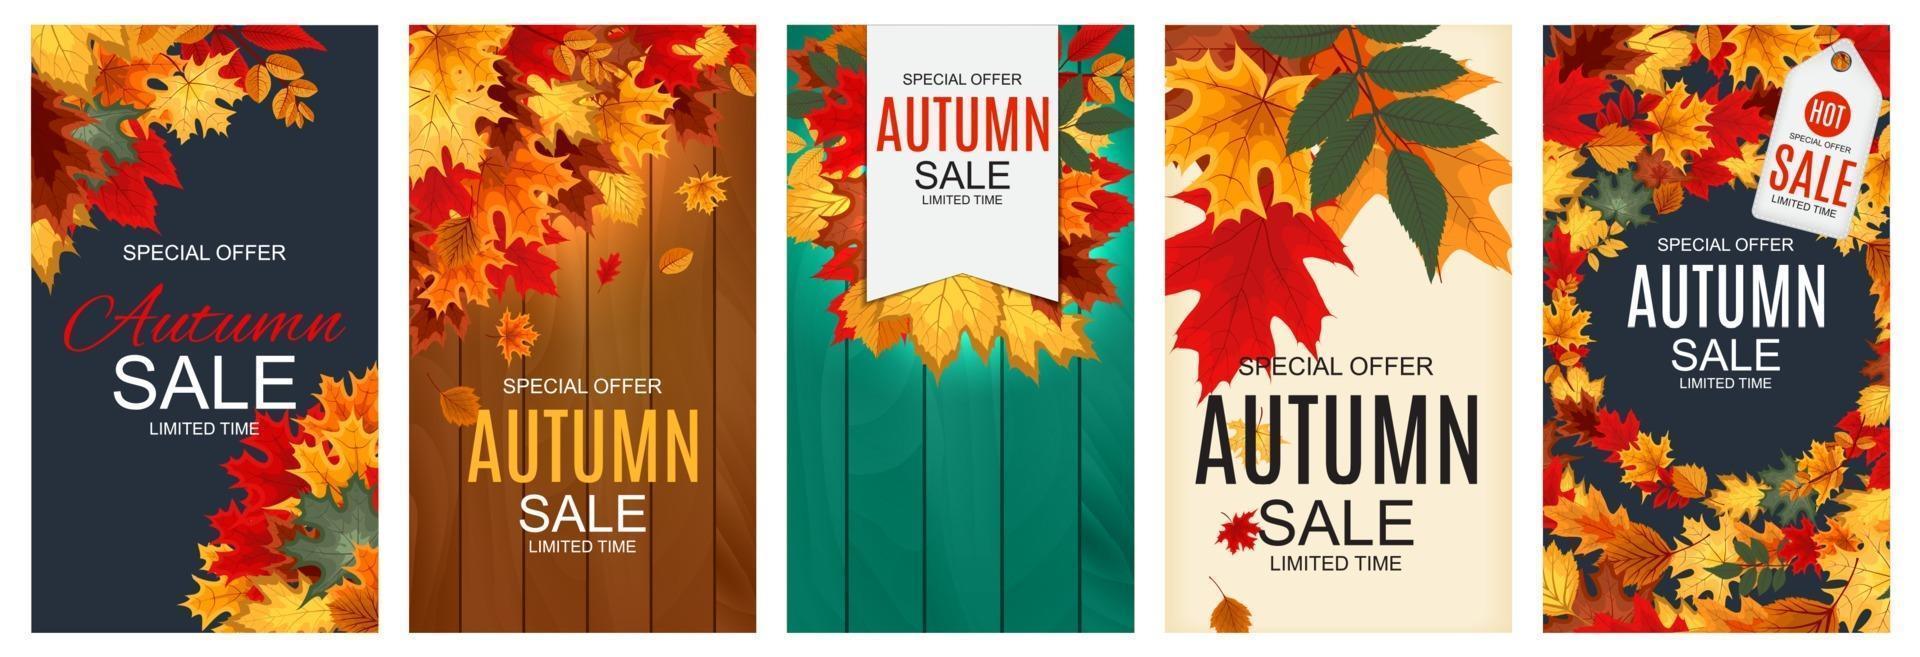 abstracte herfst verkoop achtergrond met vallende herfstbladeren collectie vector